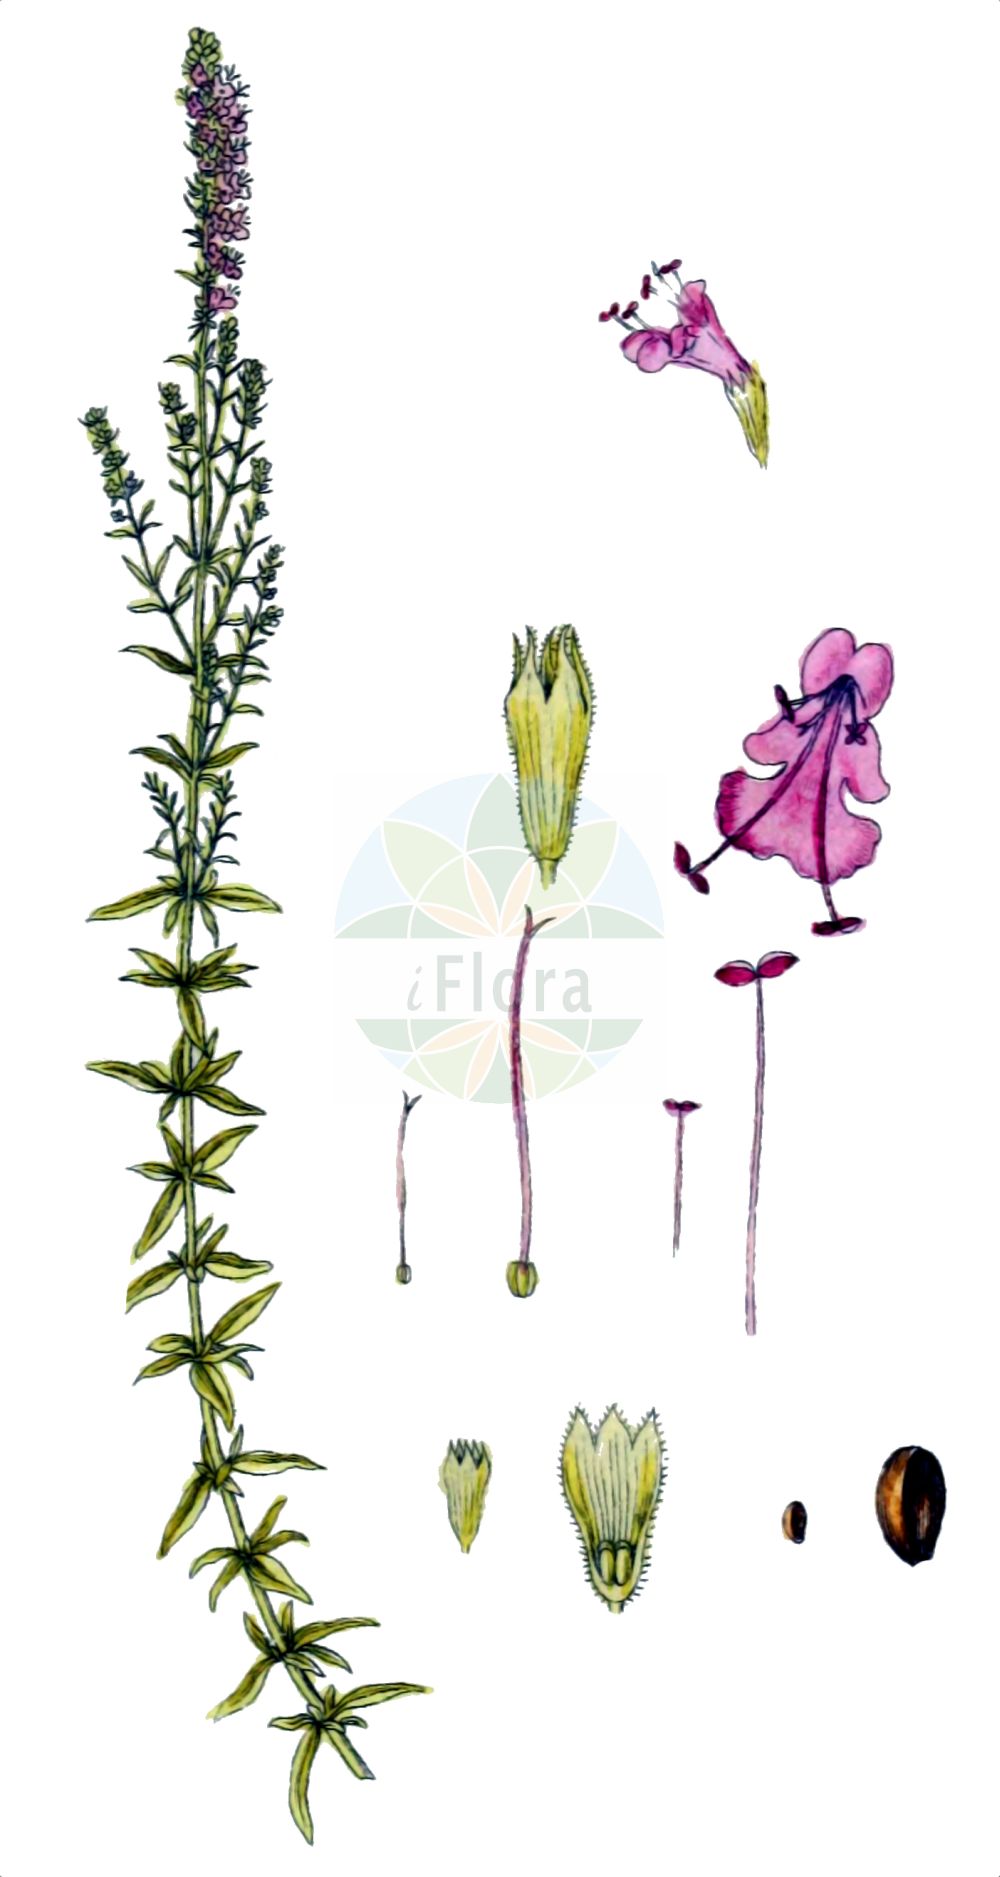 Historische Abbildung von Hyssopus officinalis (Echter Ysop - Hyssop). Das Bild zeigt Blatt, Bluete, Frucht und Same. ---- Historical Drawing of Hyssopus officinalis (Echter Ysop - Hyssop). The image is showing leaf, flower, fruit and seed.(Hyssopus officinalis,Echter Ysop,Hyssop,Hyssopus officinalis,Thymus hyssopus,Echter Ysop,Gewoehnlicher Ysop,Hyssop,Hyssopus,Ysop,Hyssop,Lamiaceae,Lippenblütengewächse,Nettle family,Blatt,Bluete,Frucht,Same,leaf,flower,fruit,seed,Sturm (1796f))